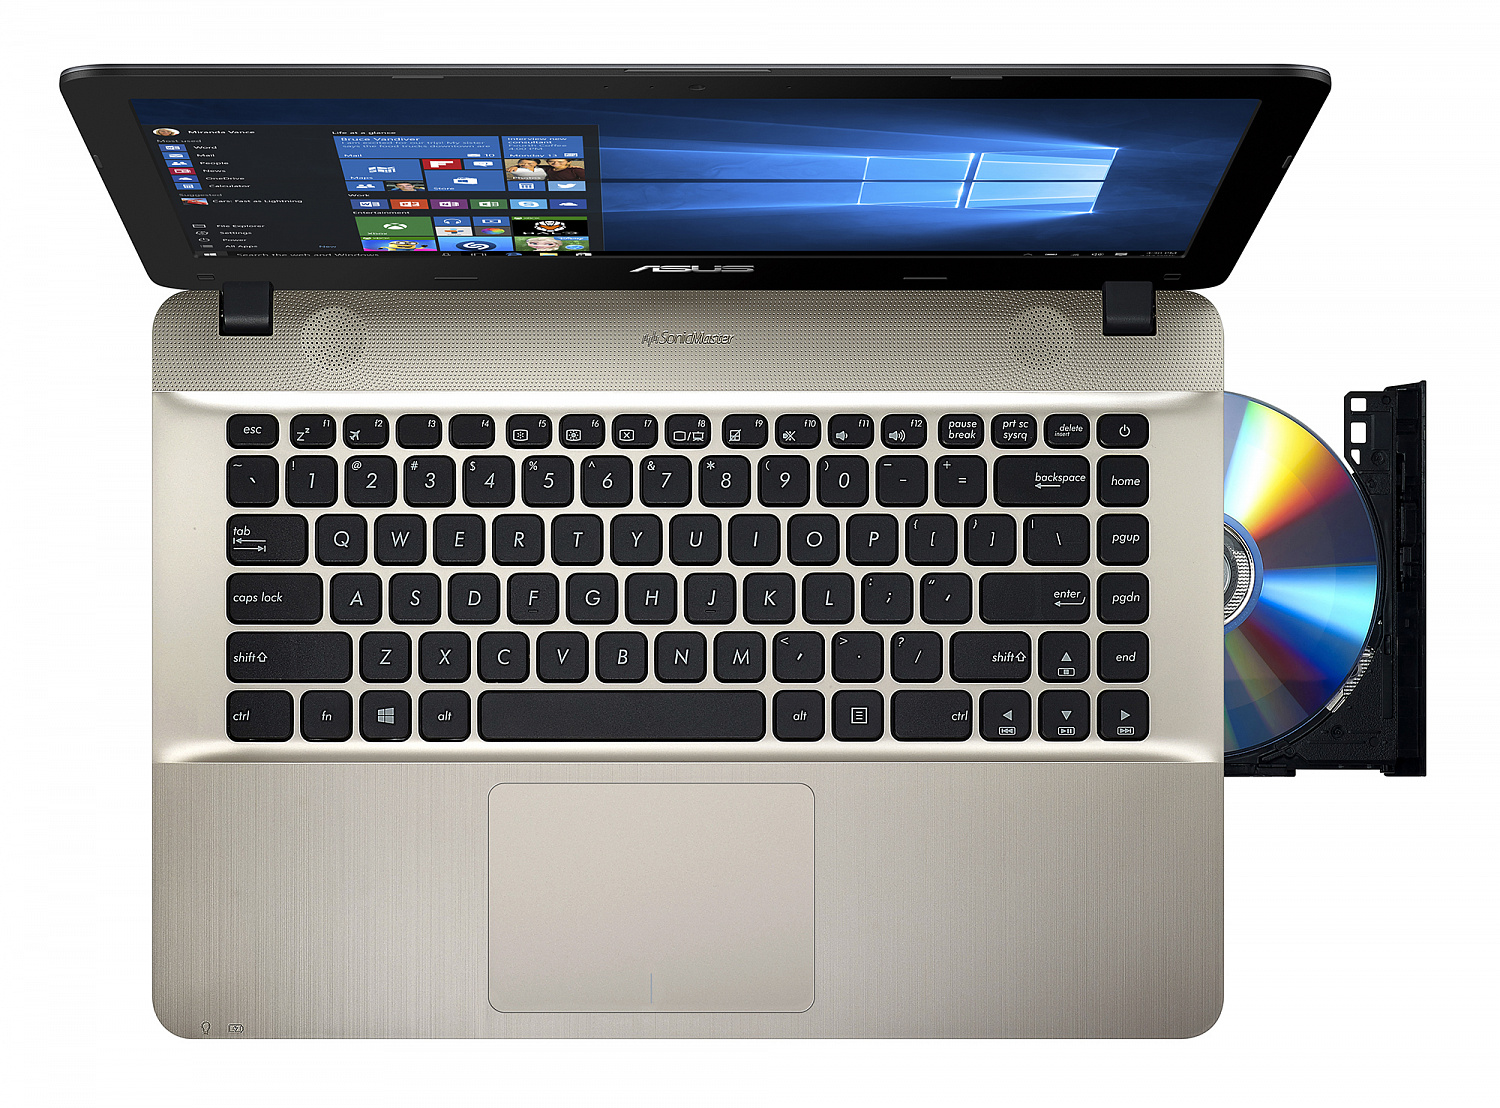 Купить Ноутбук ASUS X441SA (X441SA-WX107T) Silver Gradient - ITMag